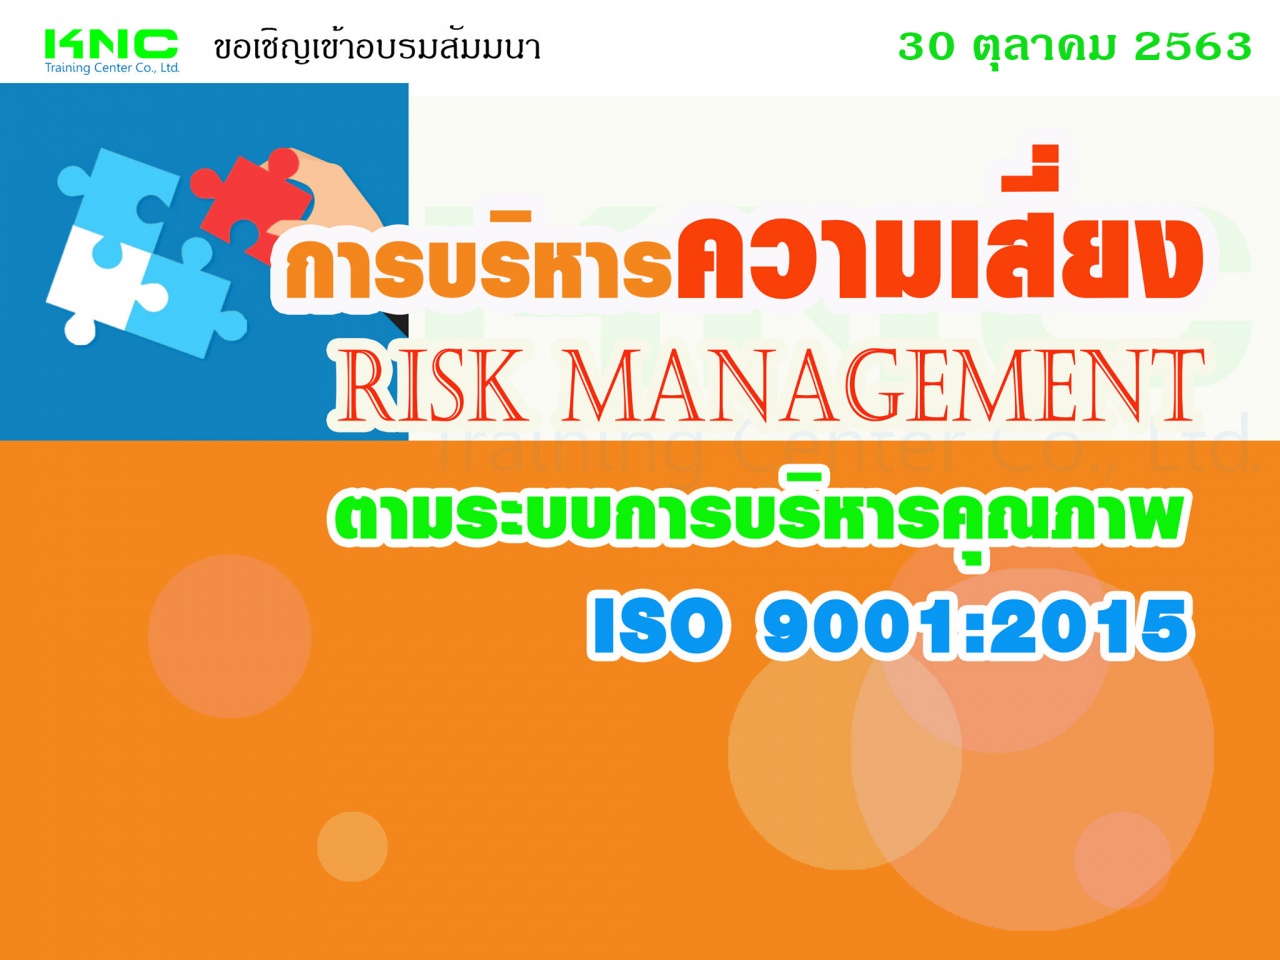 การบริหารความเสี่ยง Risk Management ตามระบบการบริหารคุณภาพ ISO 9001:2015